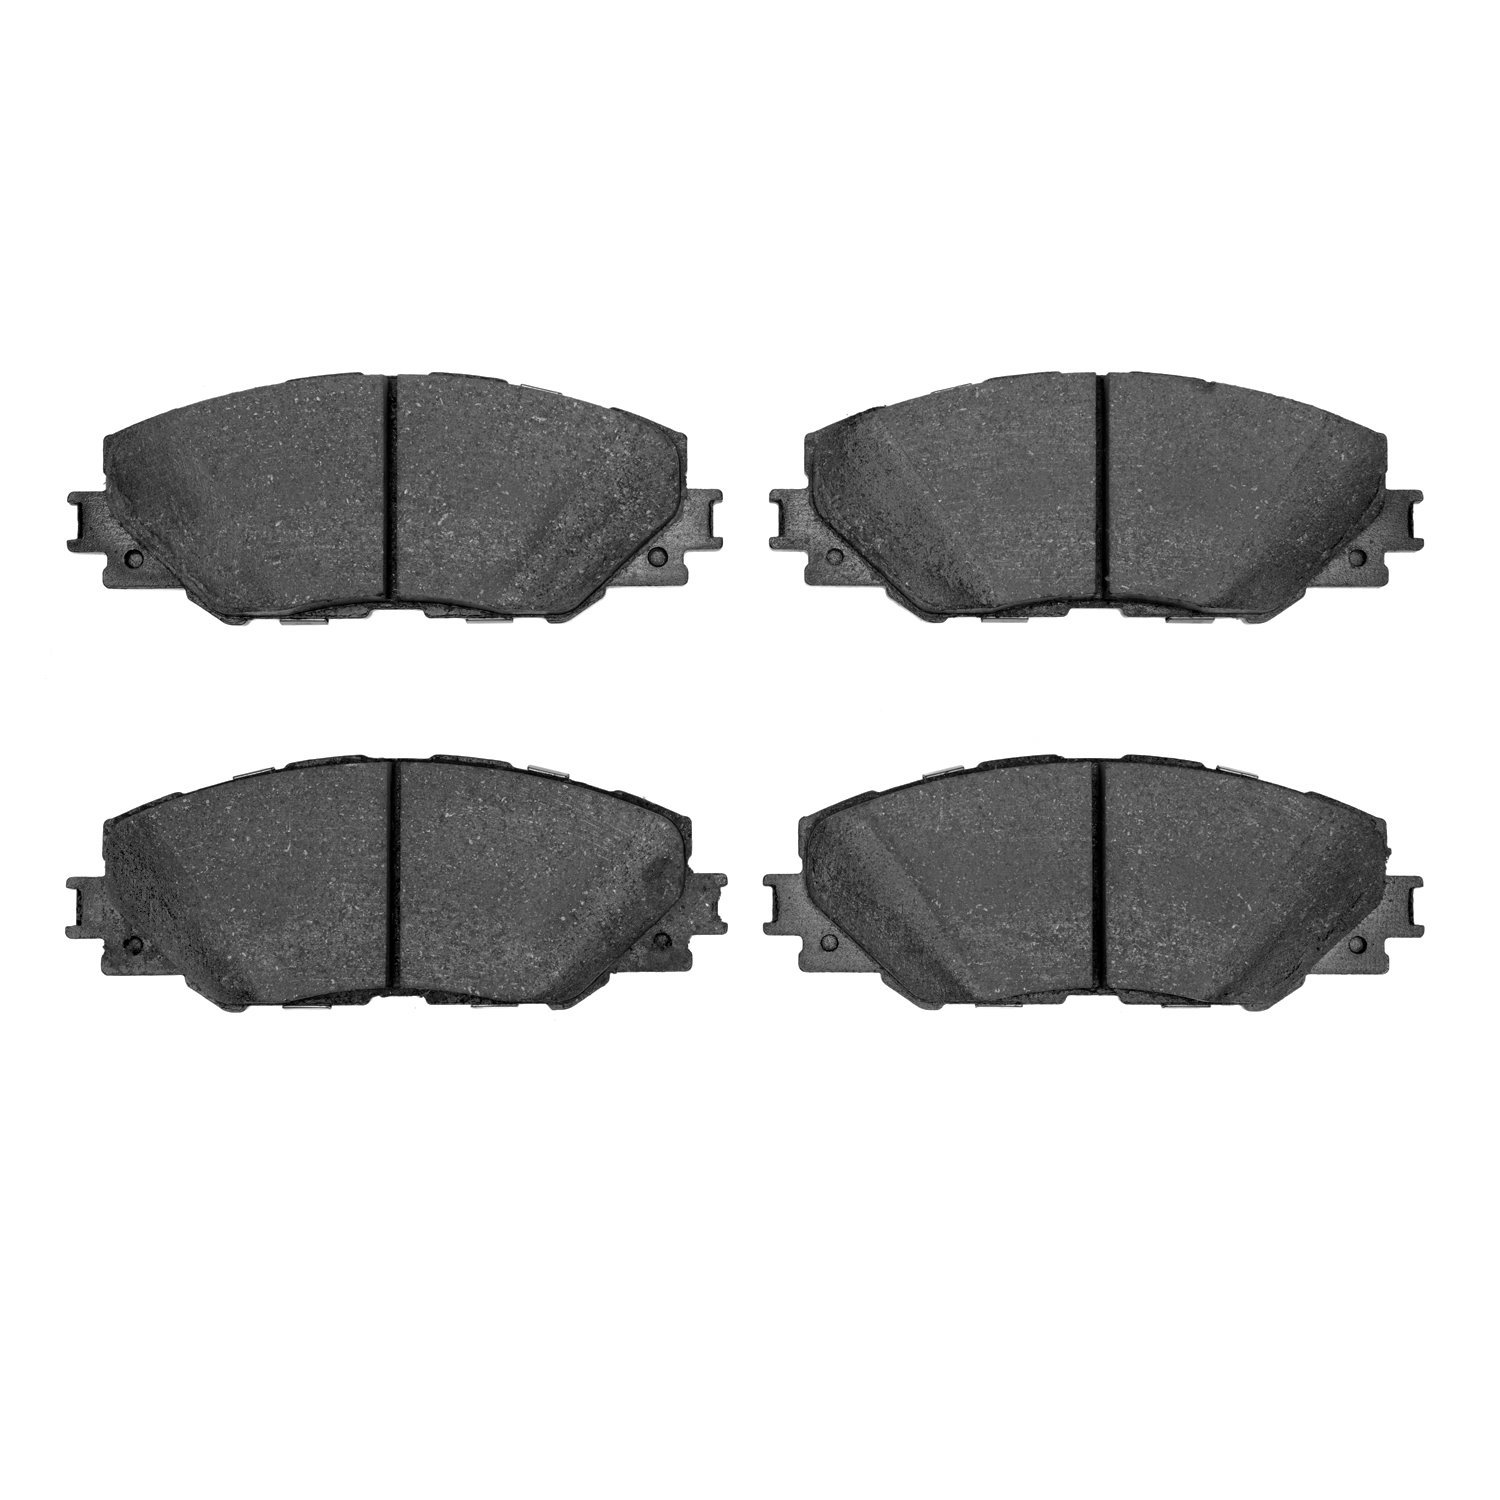 Ceramic Brake Pads, 2006-2020 Fits Multiple Makes/Models, Position: Front